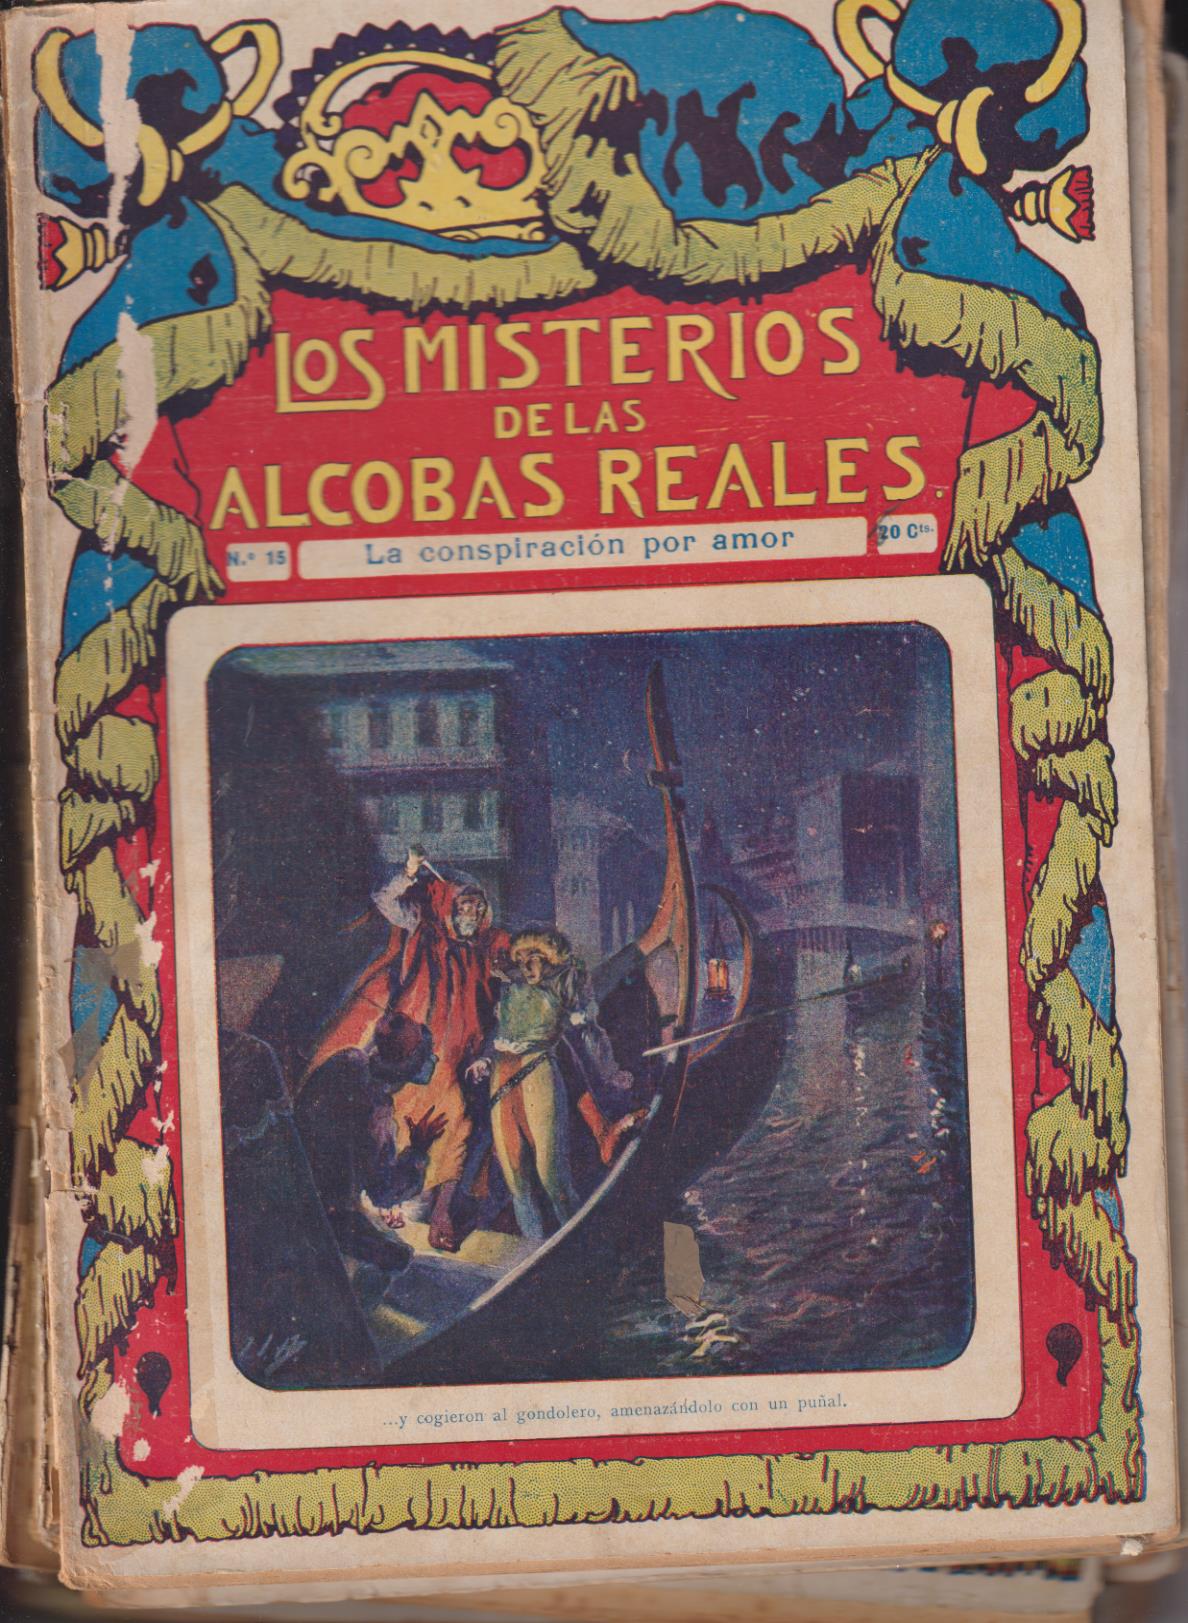 Los Misterios de las Alcobas Reales. F. Granada y Ca. Lote de 15 ejemplares del 1 al 15. Años 20